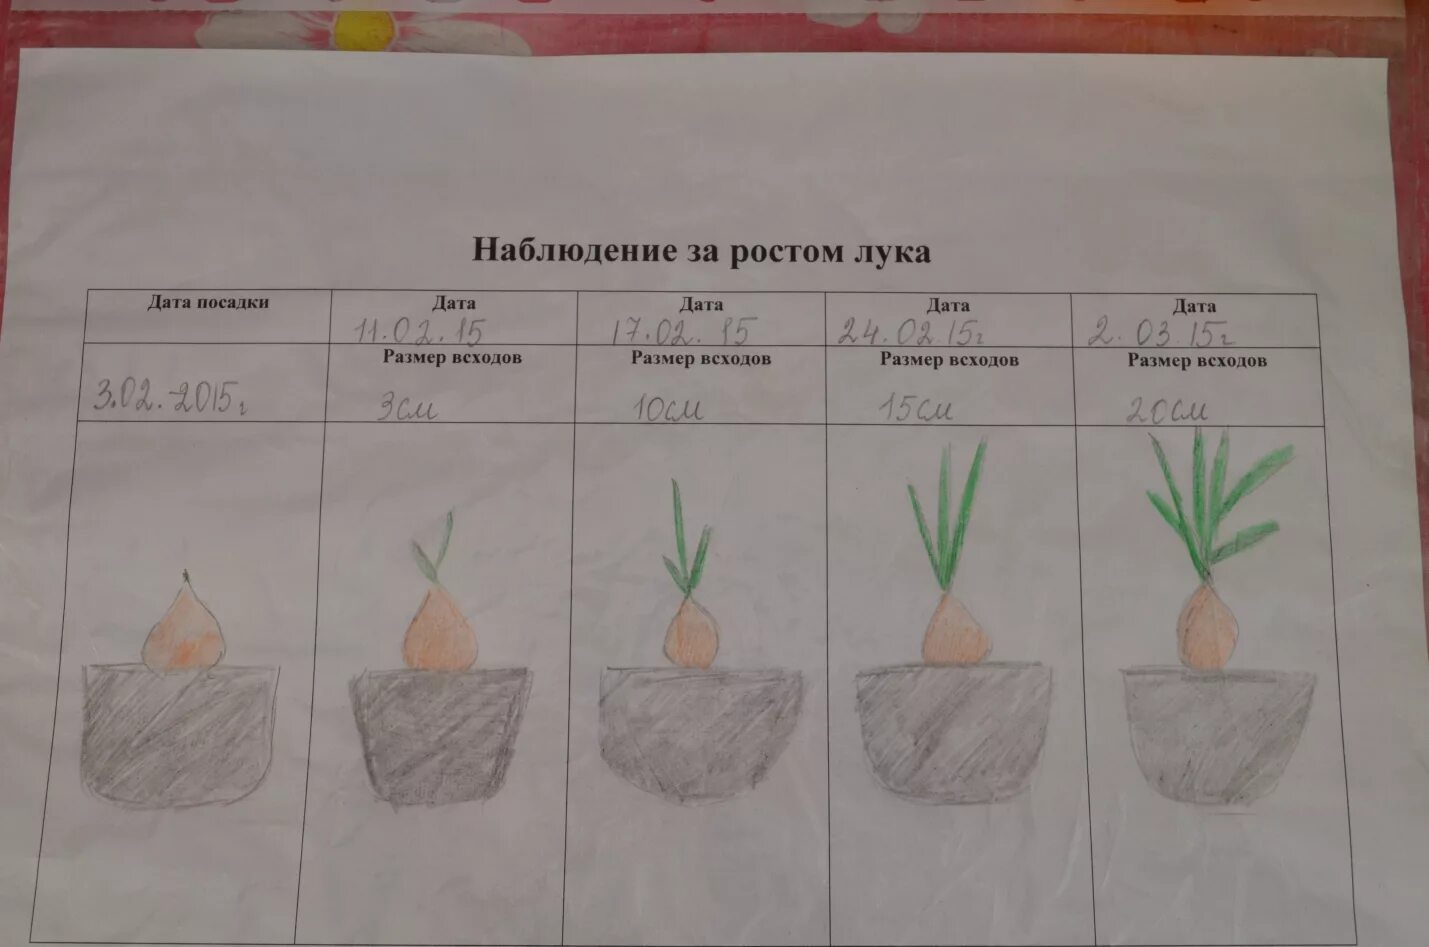 Наблюдения за растениями в детском саду